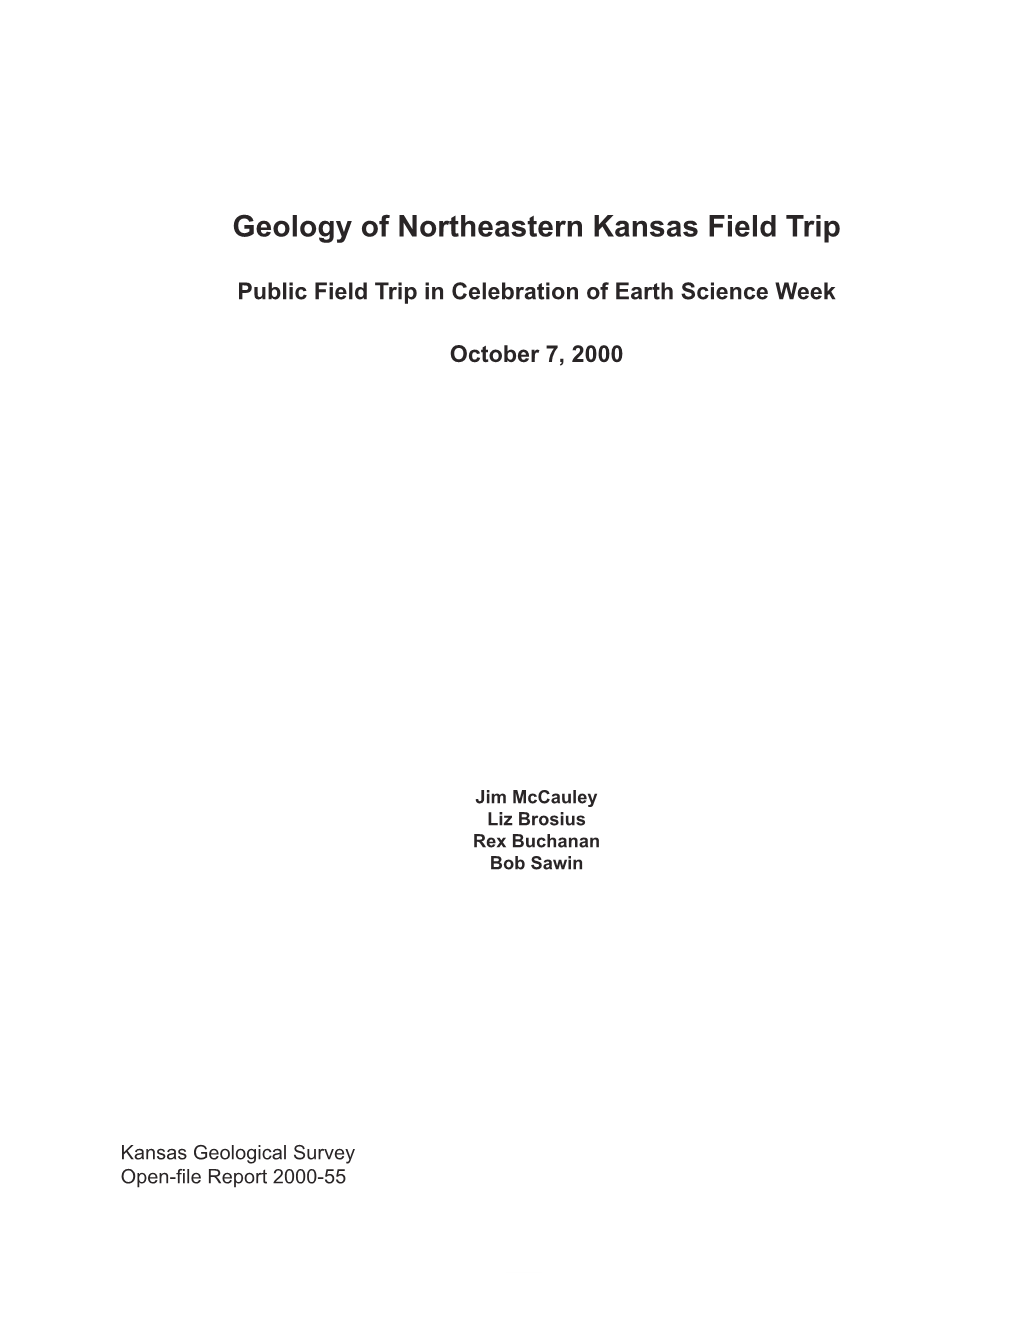 Geology of Northeastern Kansas: Public Field Trip in Celebration Of